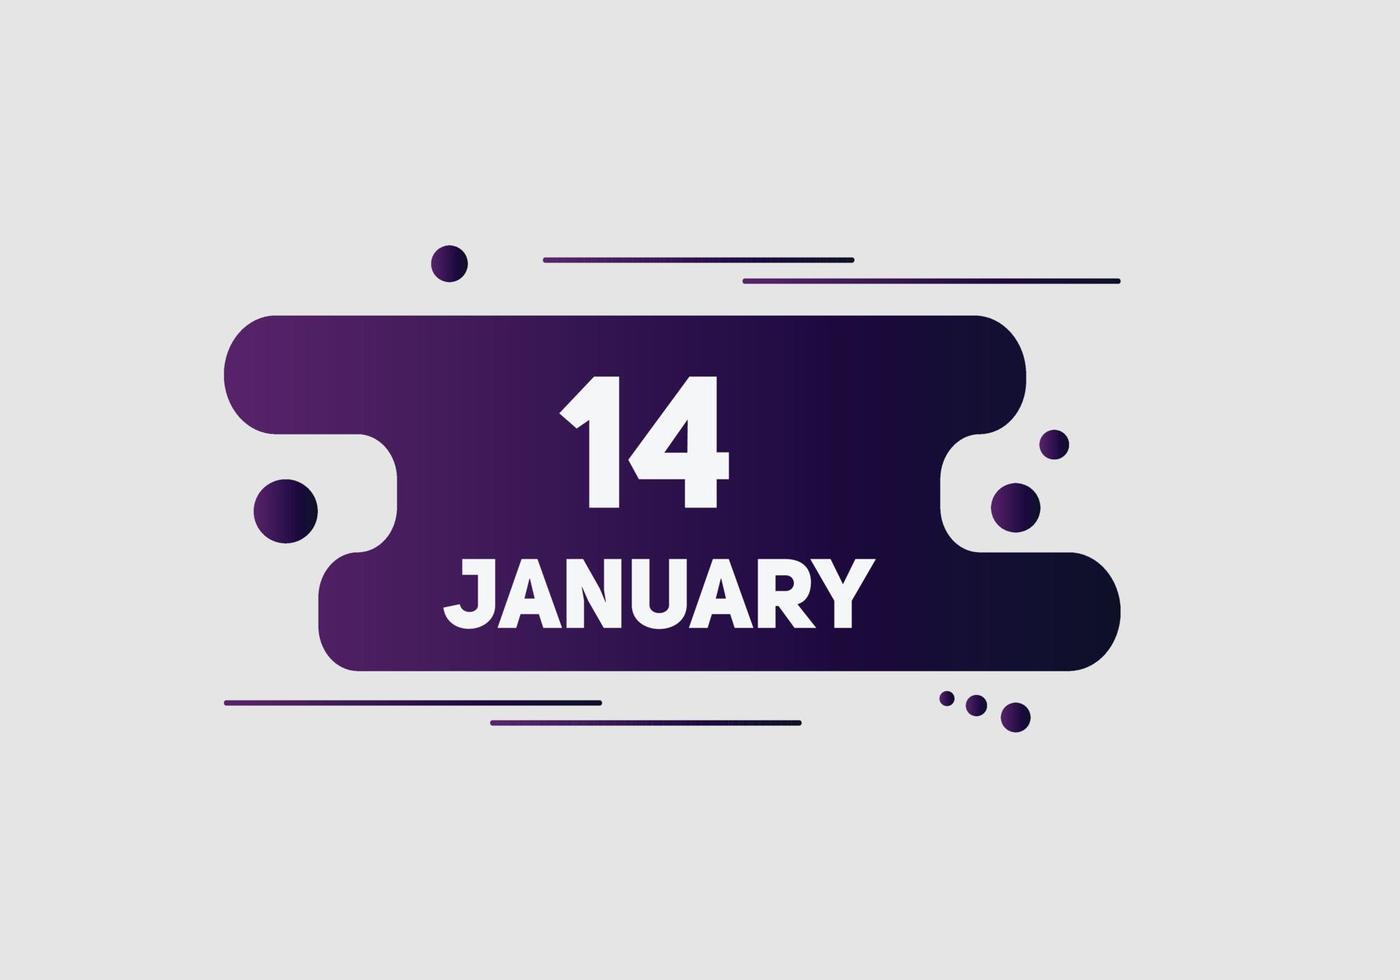 Recordatorio del calendario del 14 de enero. Plantilla de icono de calendario diario del 14 de enero. plantilla de diseño de icono de calendario 14 de enero. ilustración vectorial vector